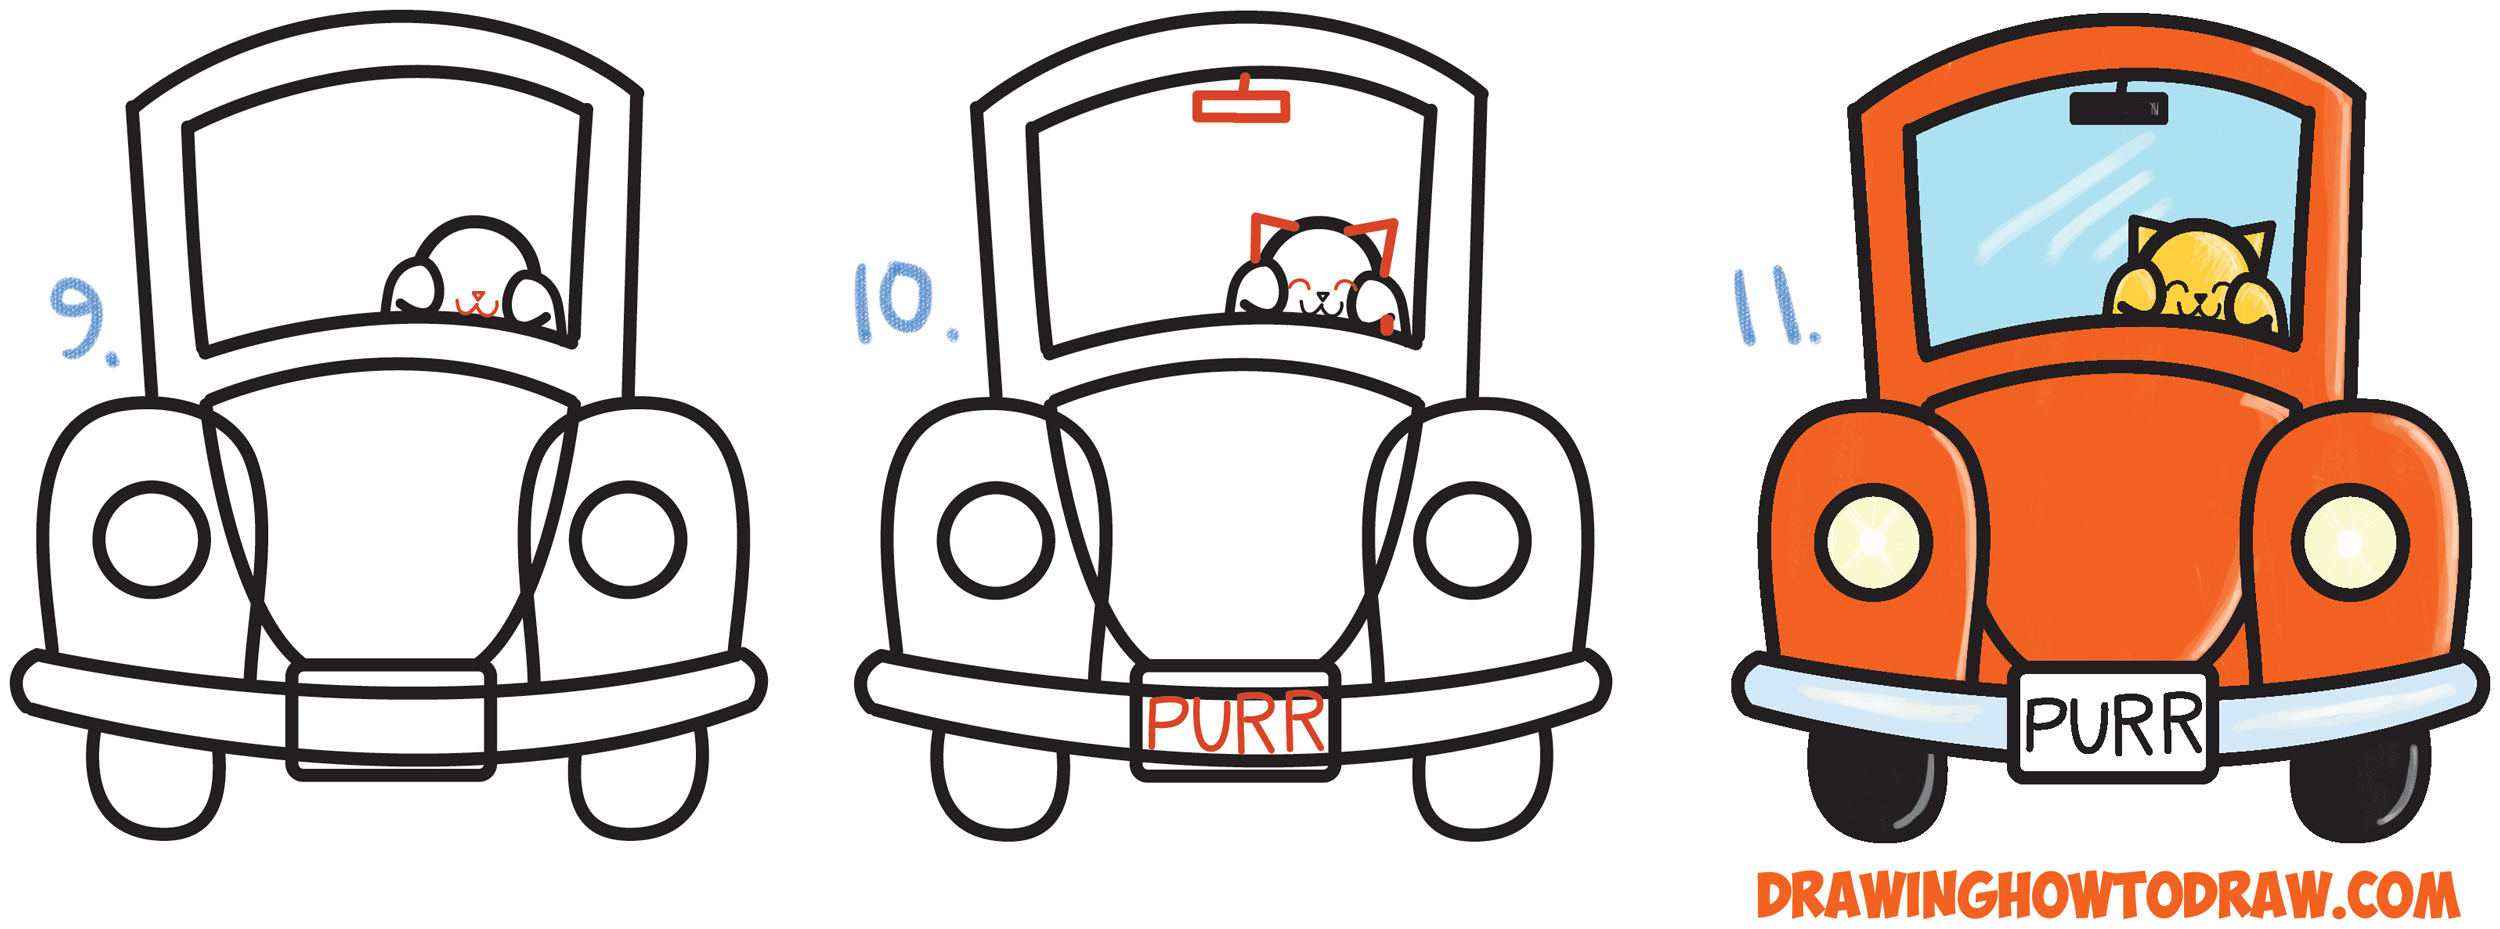 driving car cartoon